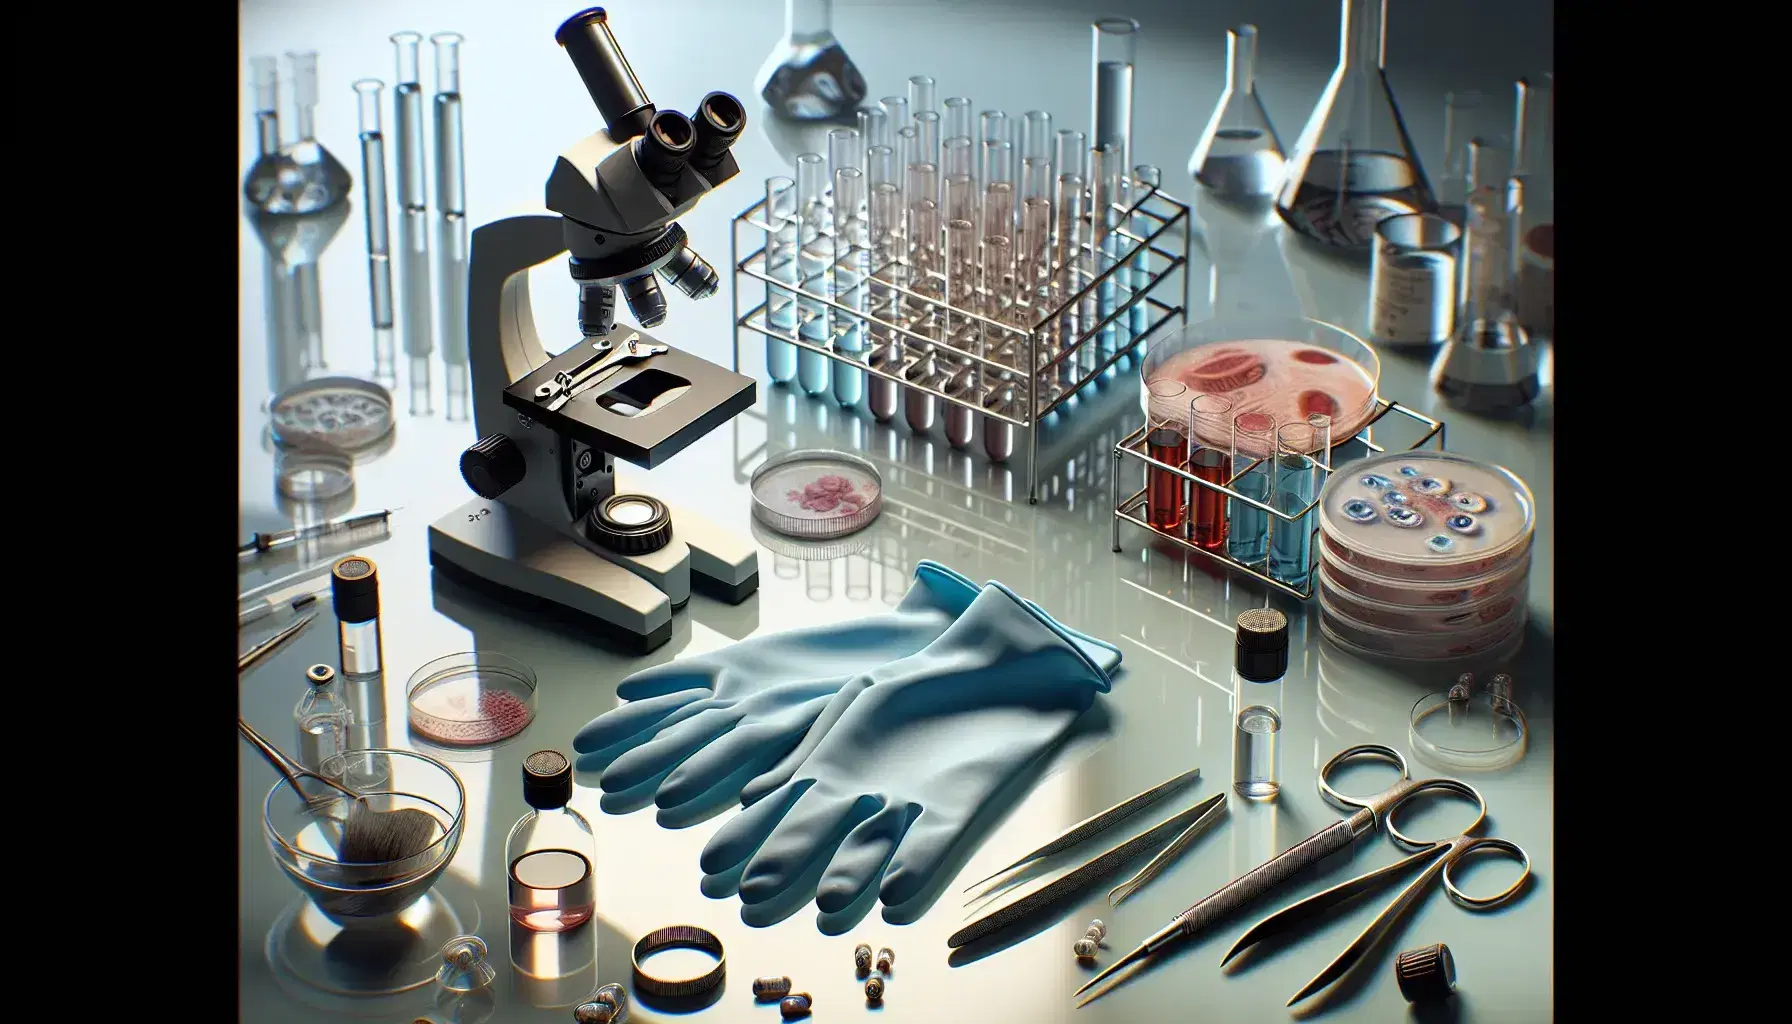 Mesa de laboratorio de biología forense con guantes de látex azules, microscopio, tubos de ensayo con líquidos de colores y Petri con muestra biológica, rodeado de instrumentos quirúrgicos pulidos.